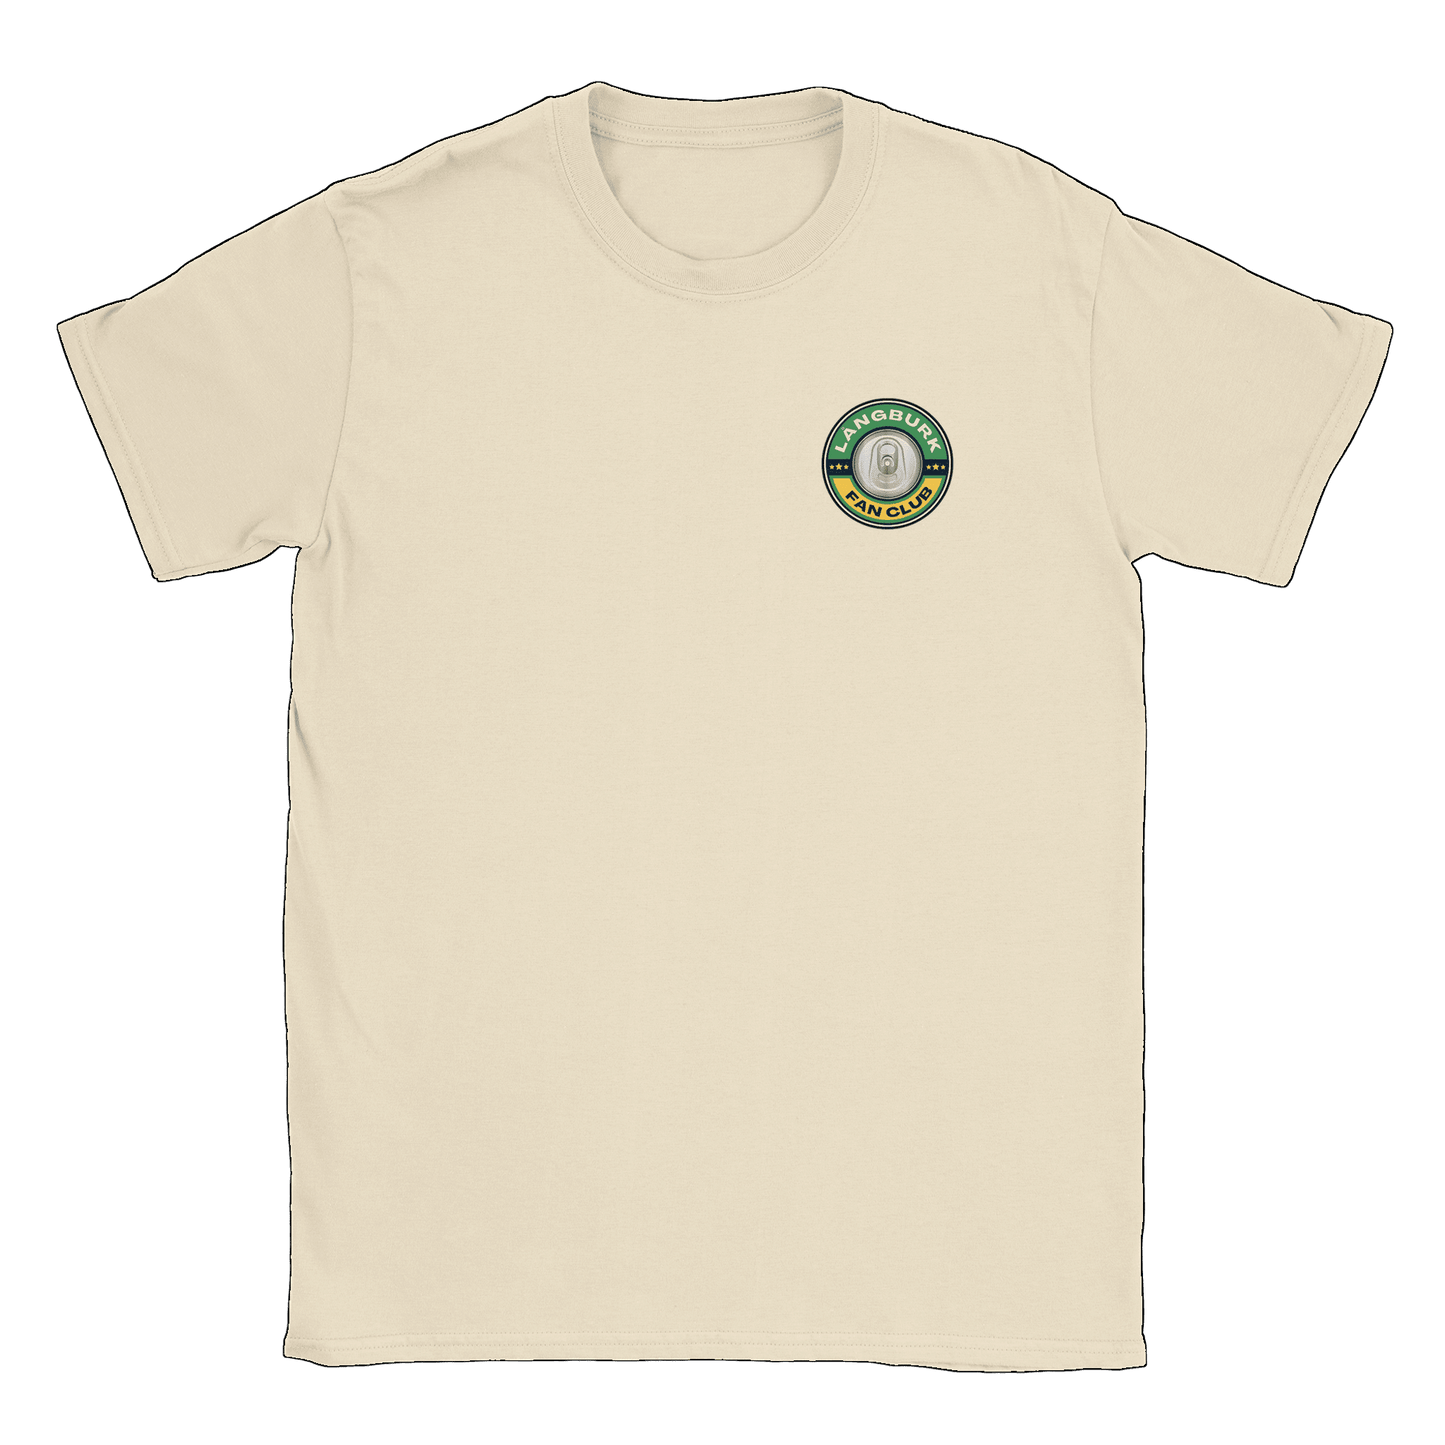 Långburk Fan Club liten - T-shirt Natural